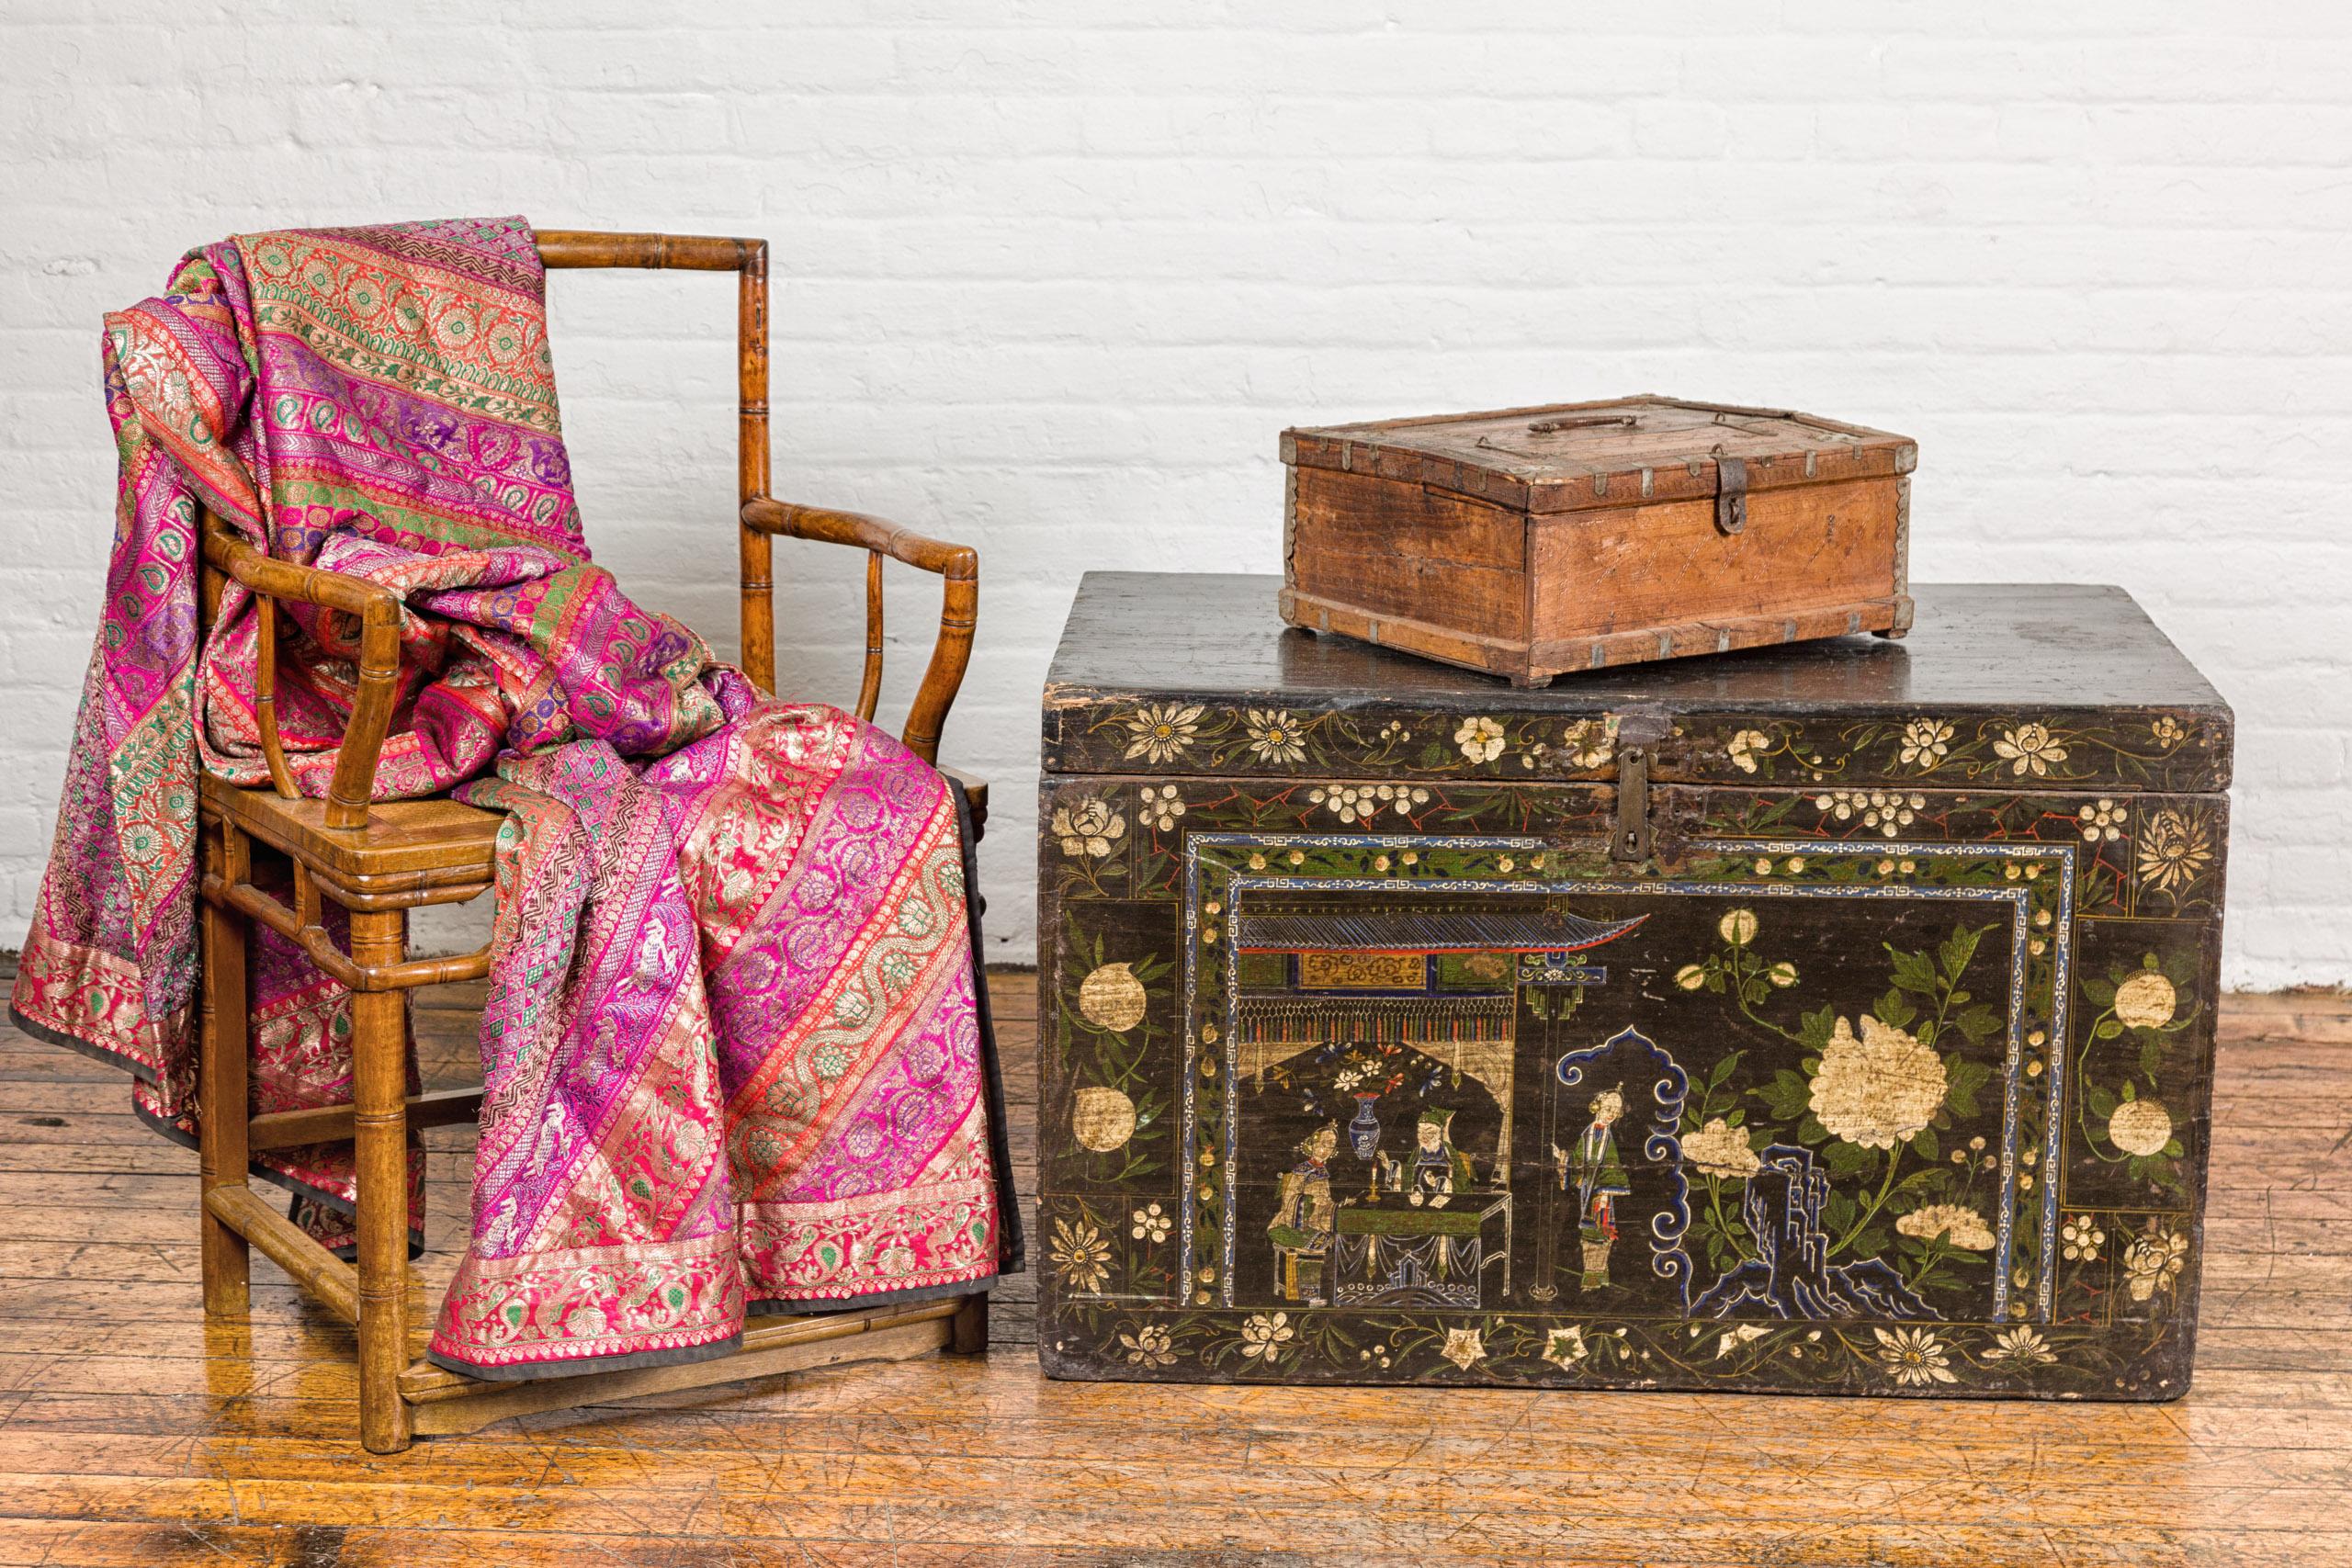 Ancienne boîte à documents indienne en bois du XIXe siècle, avec des motifs de diamants et de vagues incisés et un intérieur cloisonné. Cette boîte à documents indienne en bois du XIXe siècle témoigne de l'exquise qualité de l'artisanat et du riche